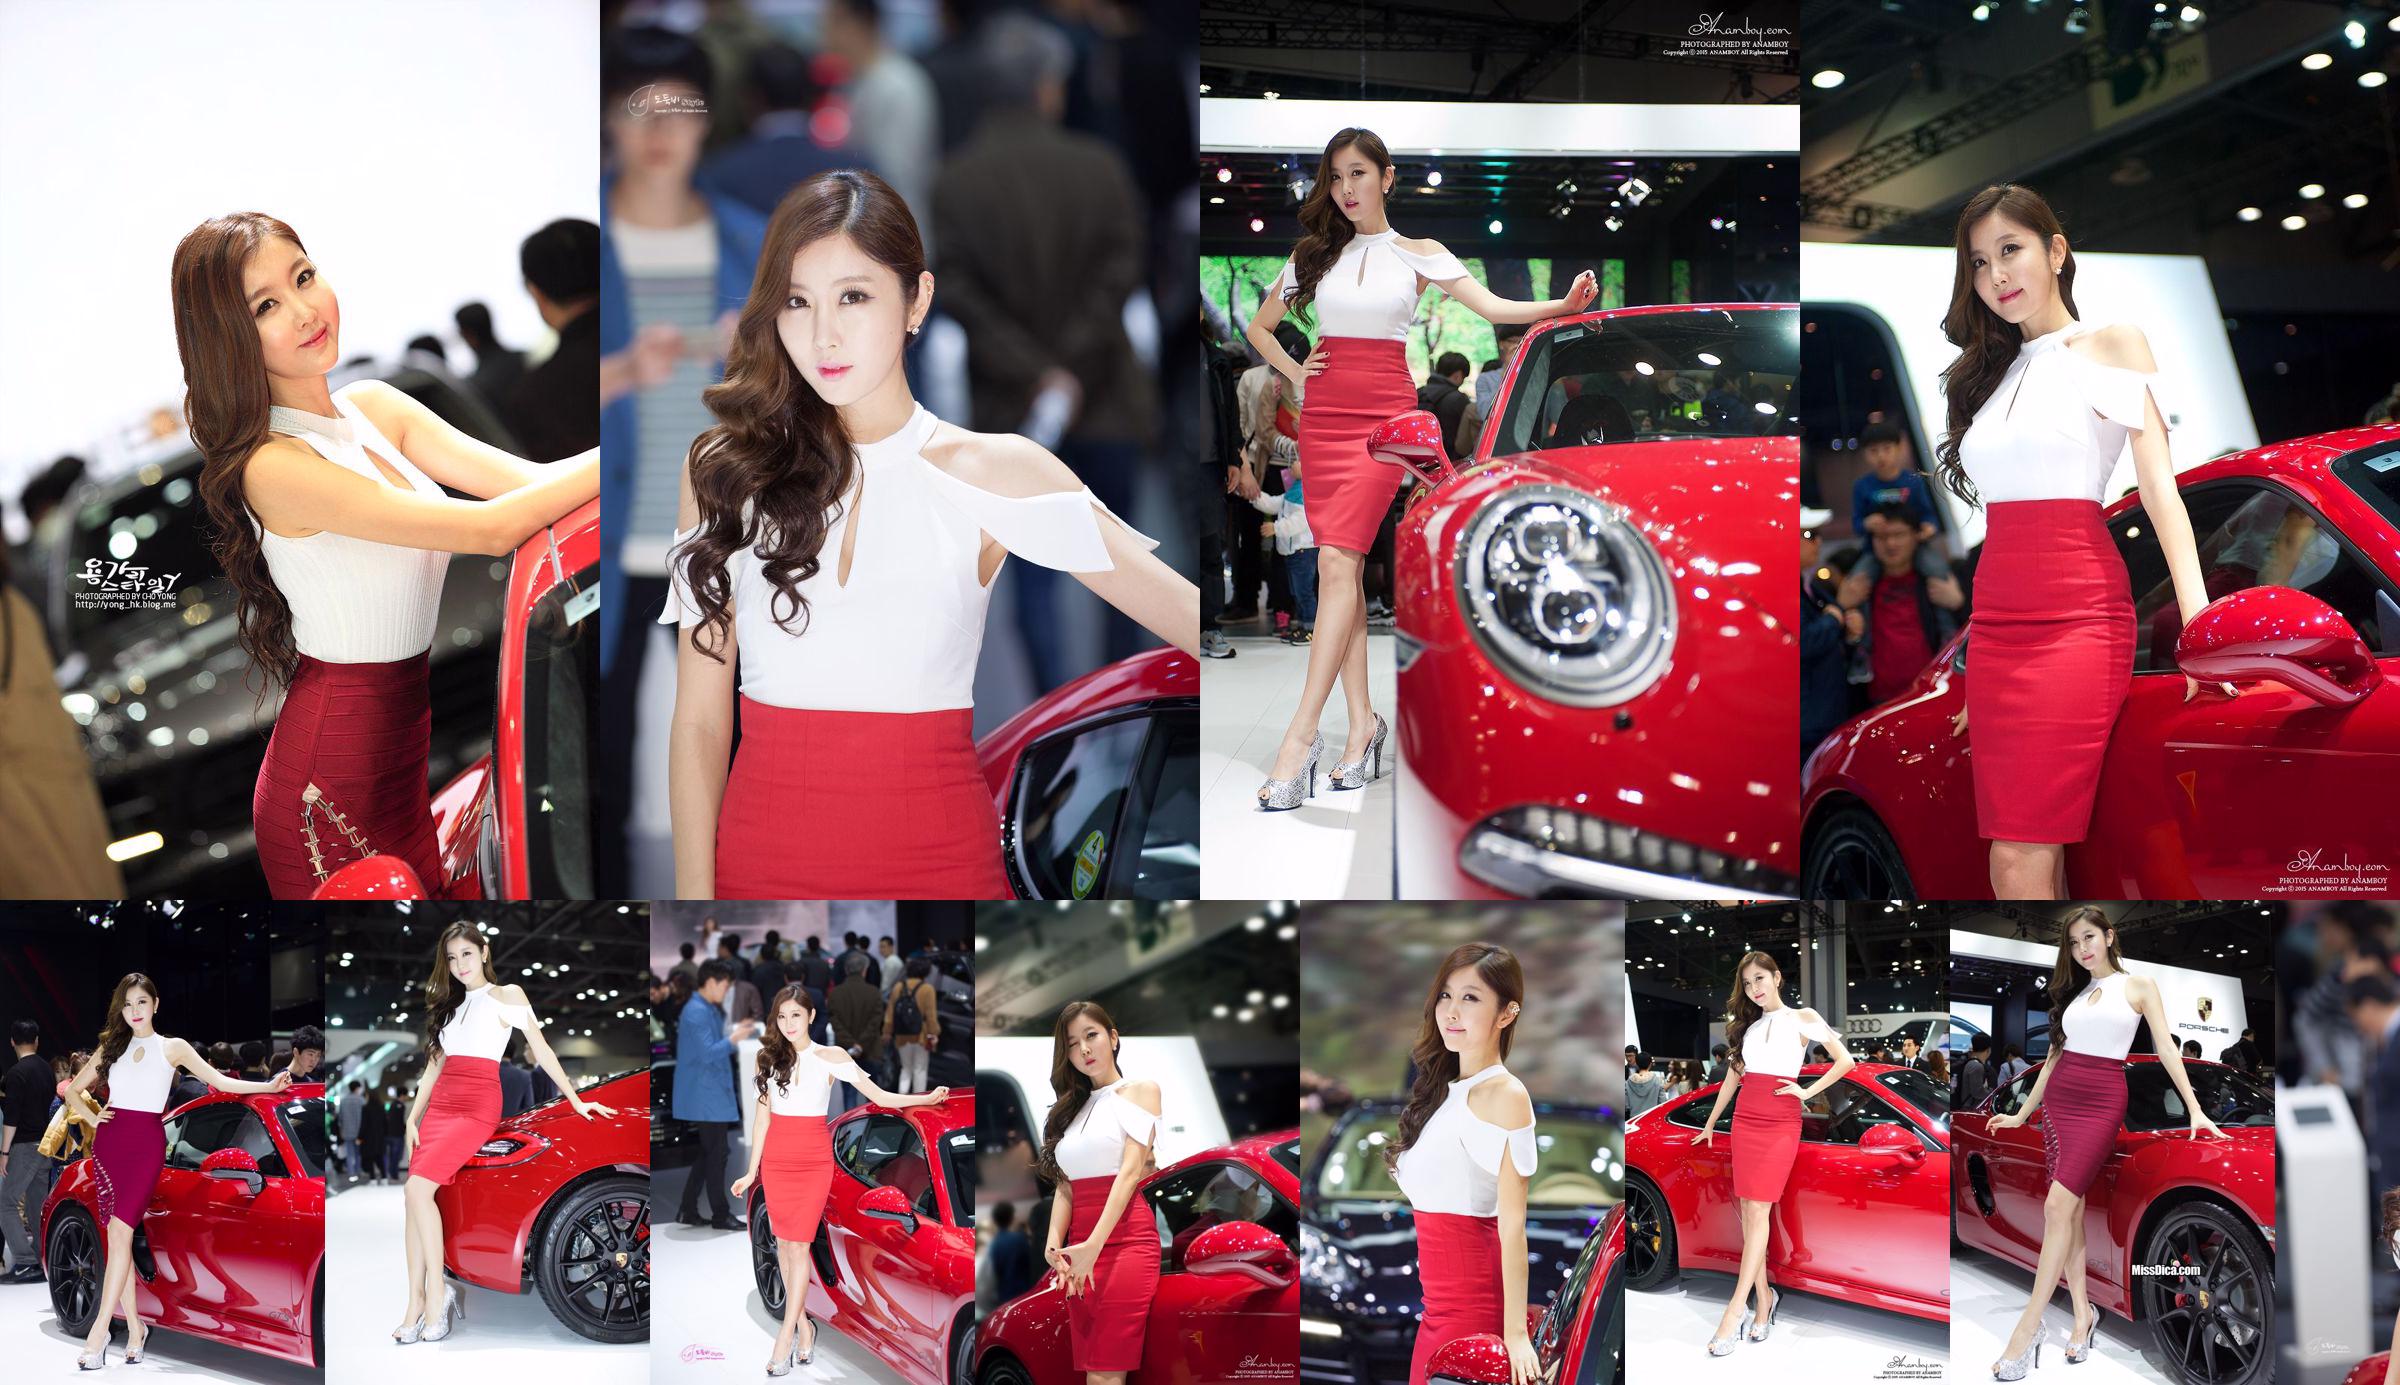 รวมภาพรถเกาหลีรุ่น Cui Xingya / "Red Skirt Series ของ Cui Xinger ที่งานออโต้โชว์" No.1127e3 หน้า 2